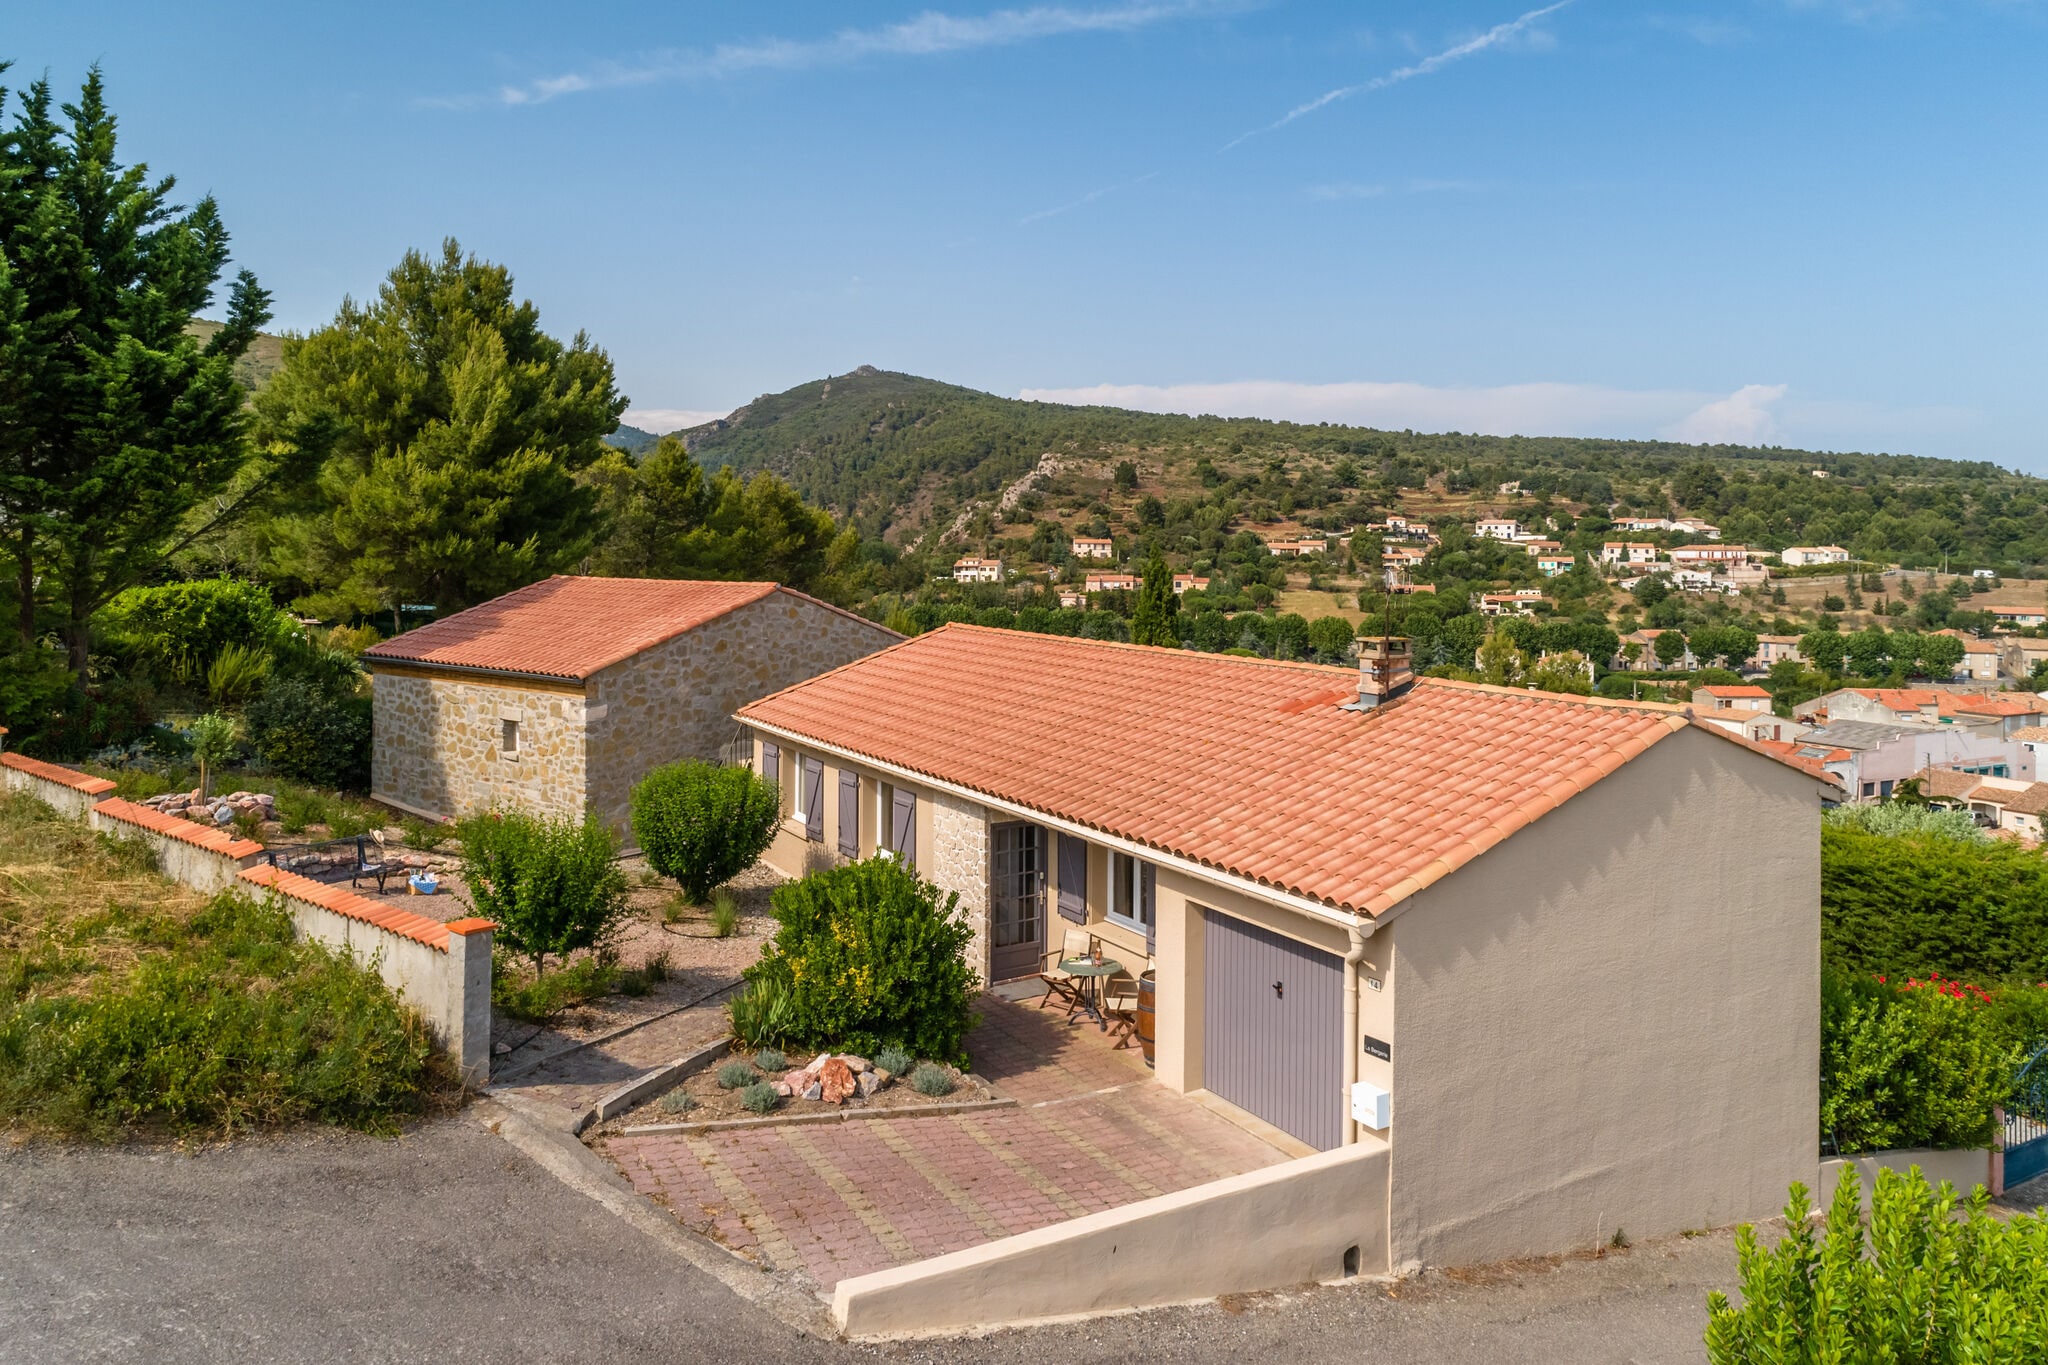 Serene vrijstaande villa in Zuid-Frankrijk met een privézwembad